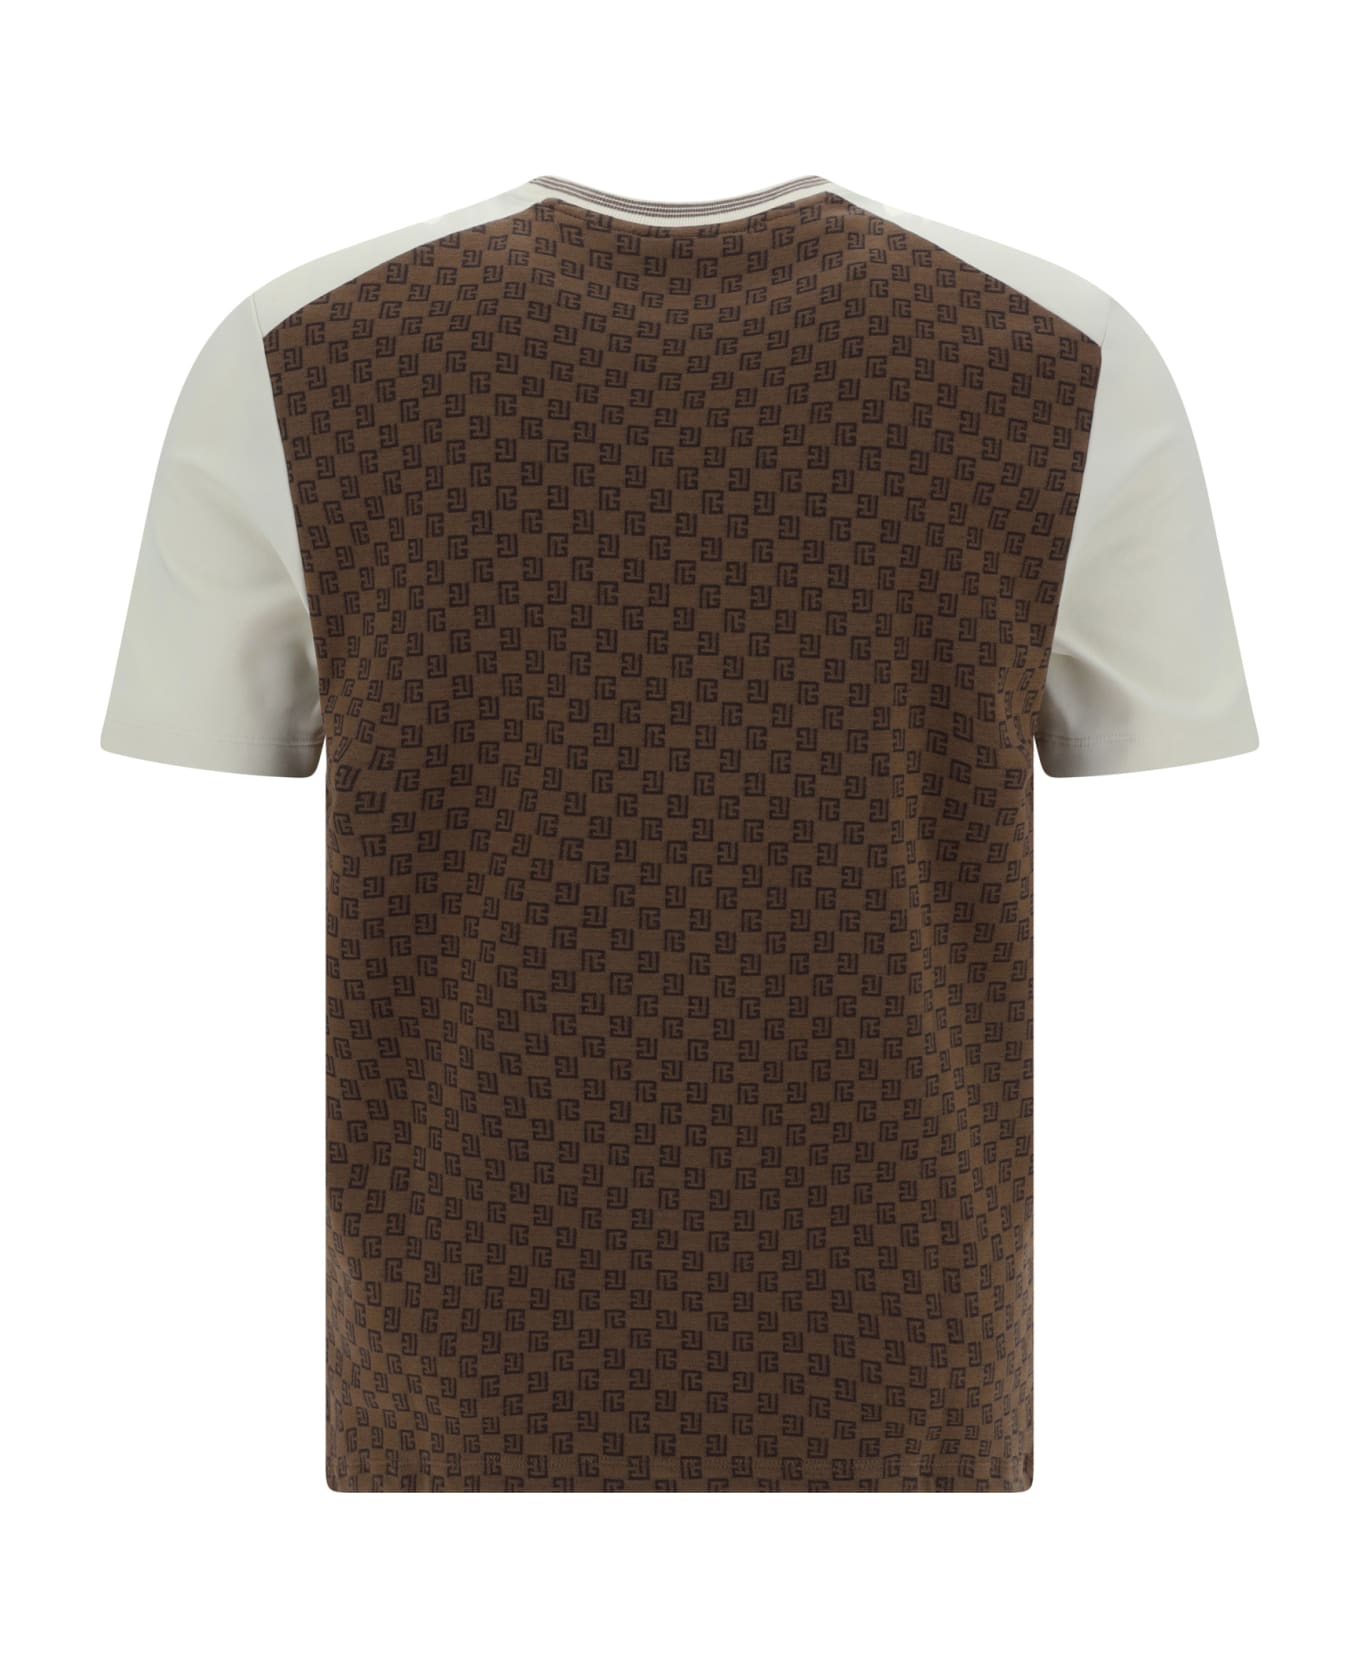 Balmain T-shirt - Marron/marron foncè/creme